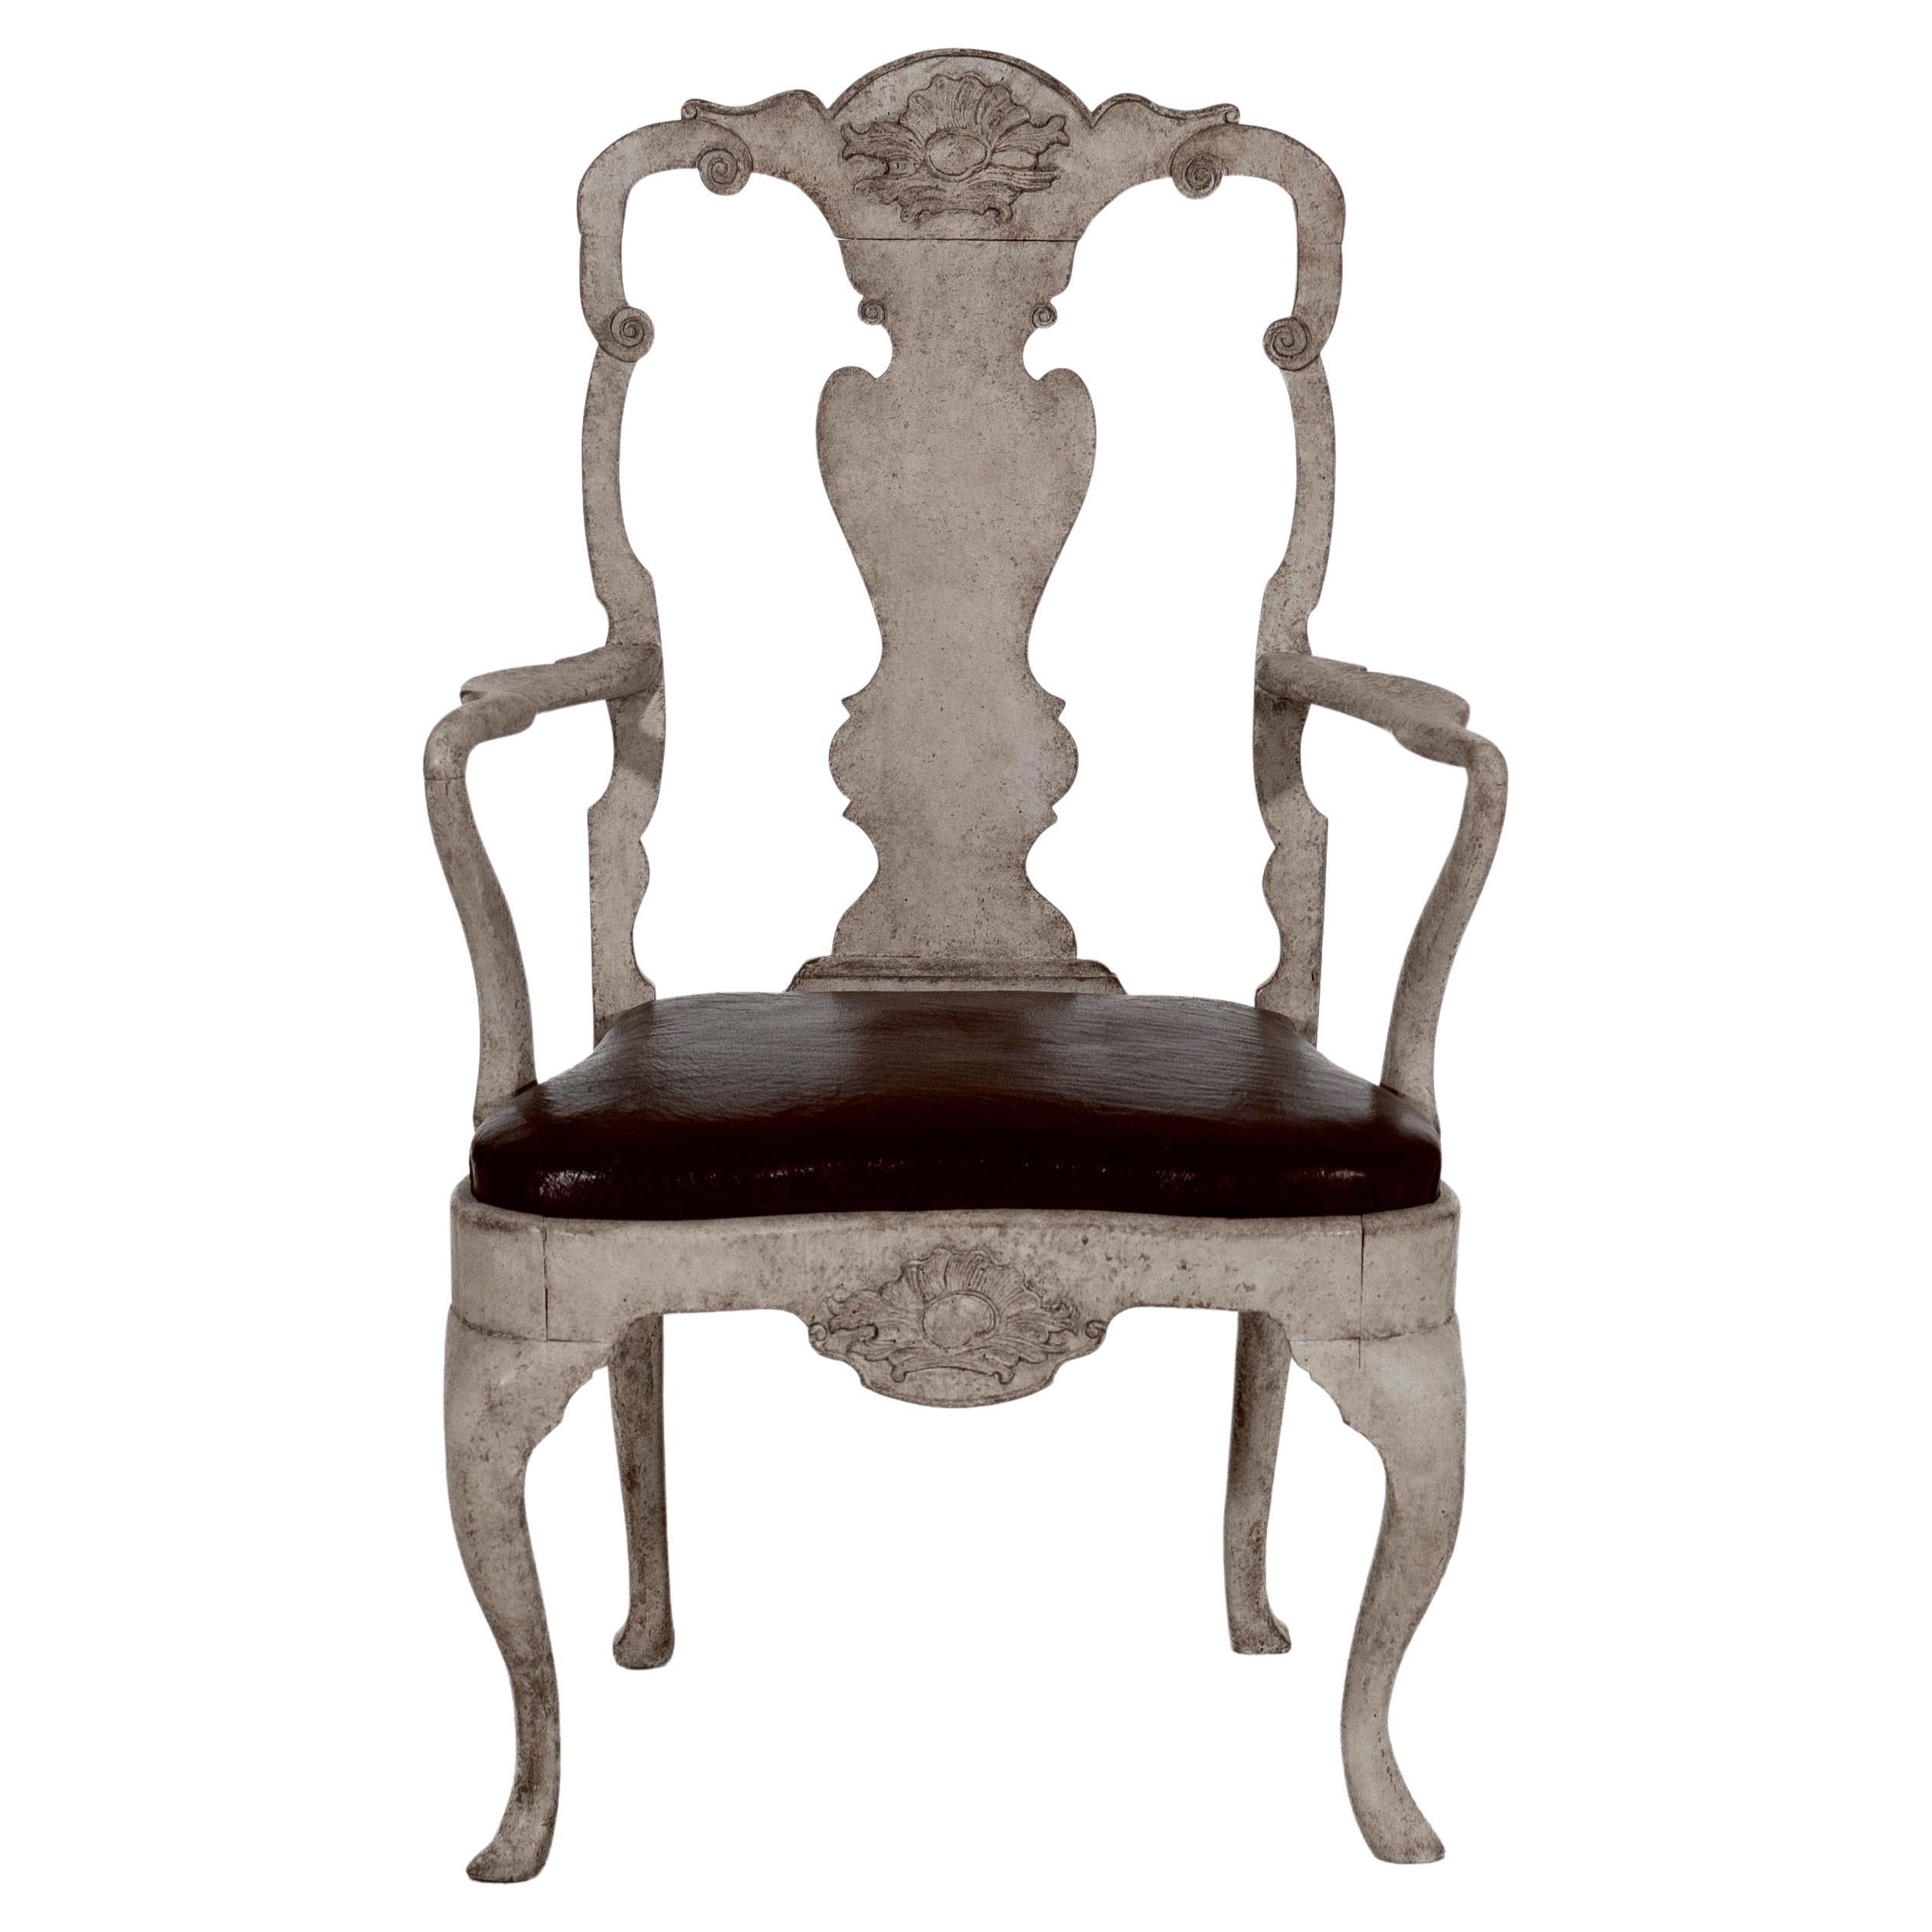 Rococo Style Norwegian Armchair 18th C